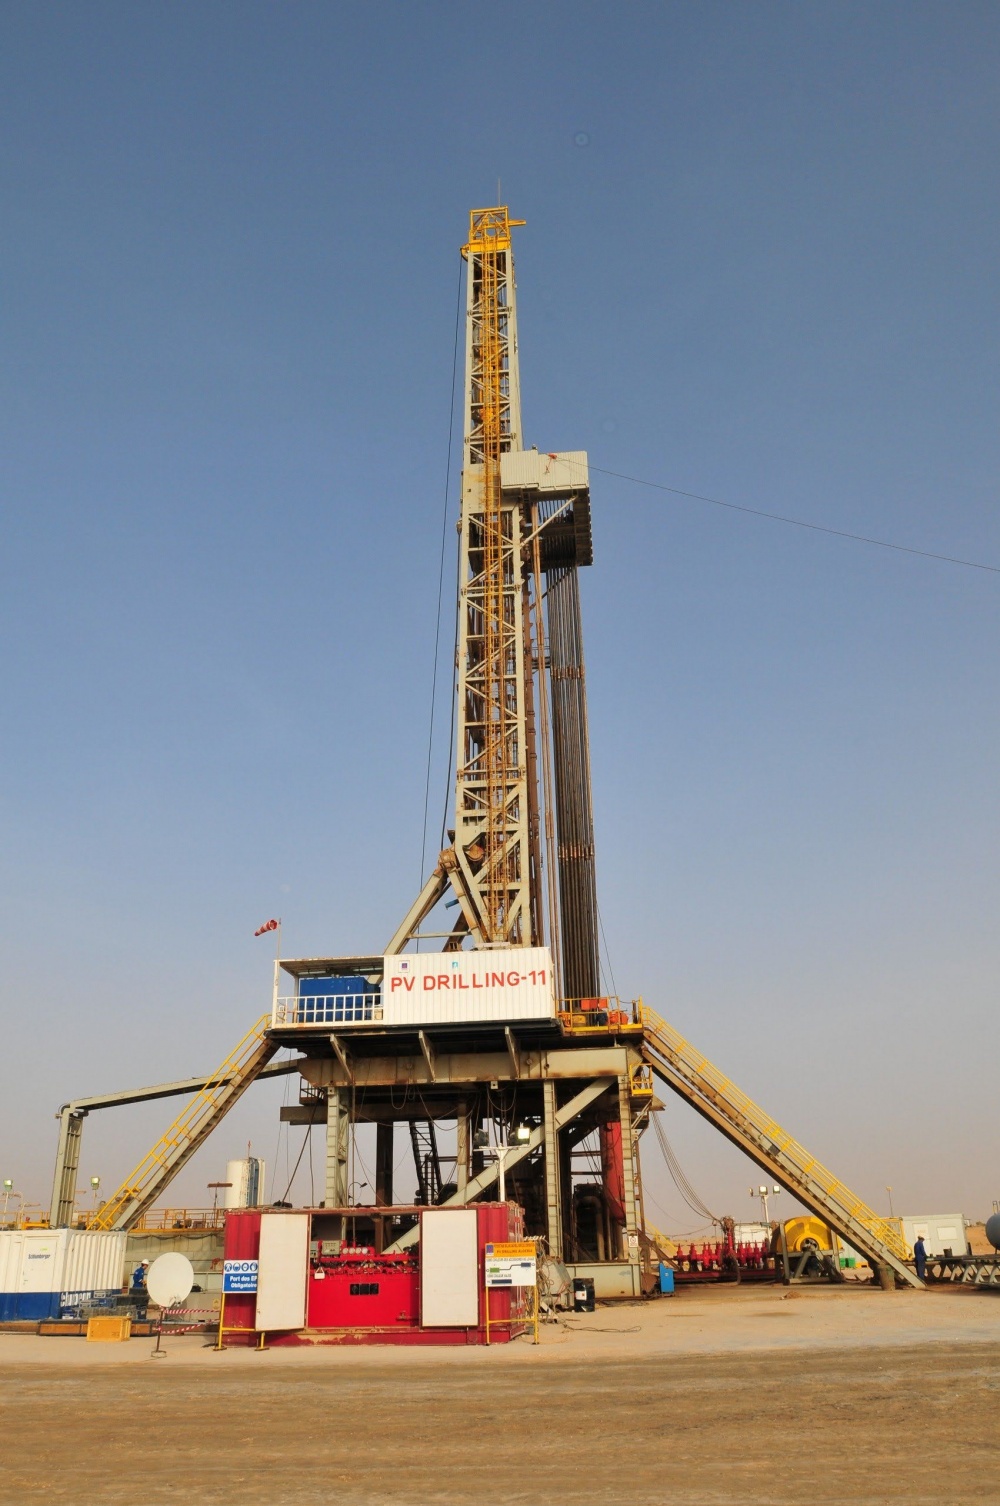 18-NDD-AB-0001-01: Thị trường Algeria: Đến nay, giàn khoan đất liền PV DRILLING 11 của PV Drilling đã hoạt động tại Algeria được 16 năm với nhiều thành tích an toàn, hiệu quả và hiệu suất khoan từ 98 - 99%, đồng thời đạt được nhiều thành tựu như choòng khoan đạt hiệu suất cao nhất do Smith Bits chứng nhận, khoan trong thành hệ Hamra Quartzite Formation với tốc độ 2.75m/h với chiều sâu 208.5 TD… Tính đến nay, giàn PV DRILLING 11 vẫn là biểu tượng tiên phong của PV Drilling trong hành trình vươn ra biển lớn.